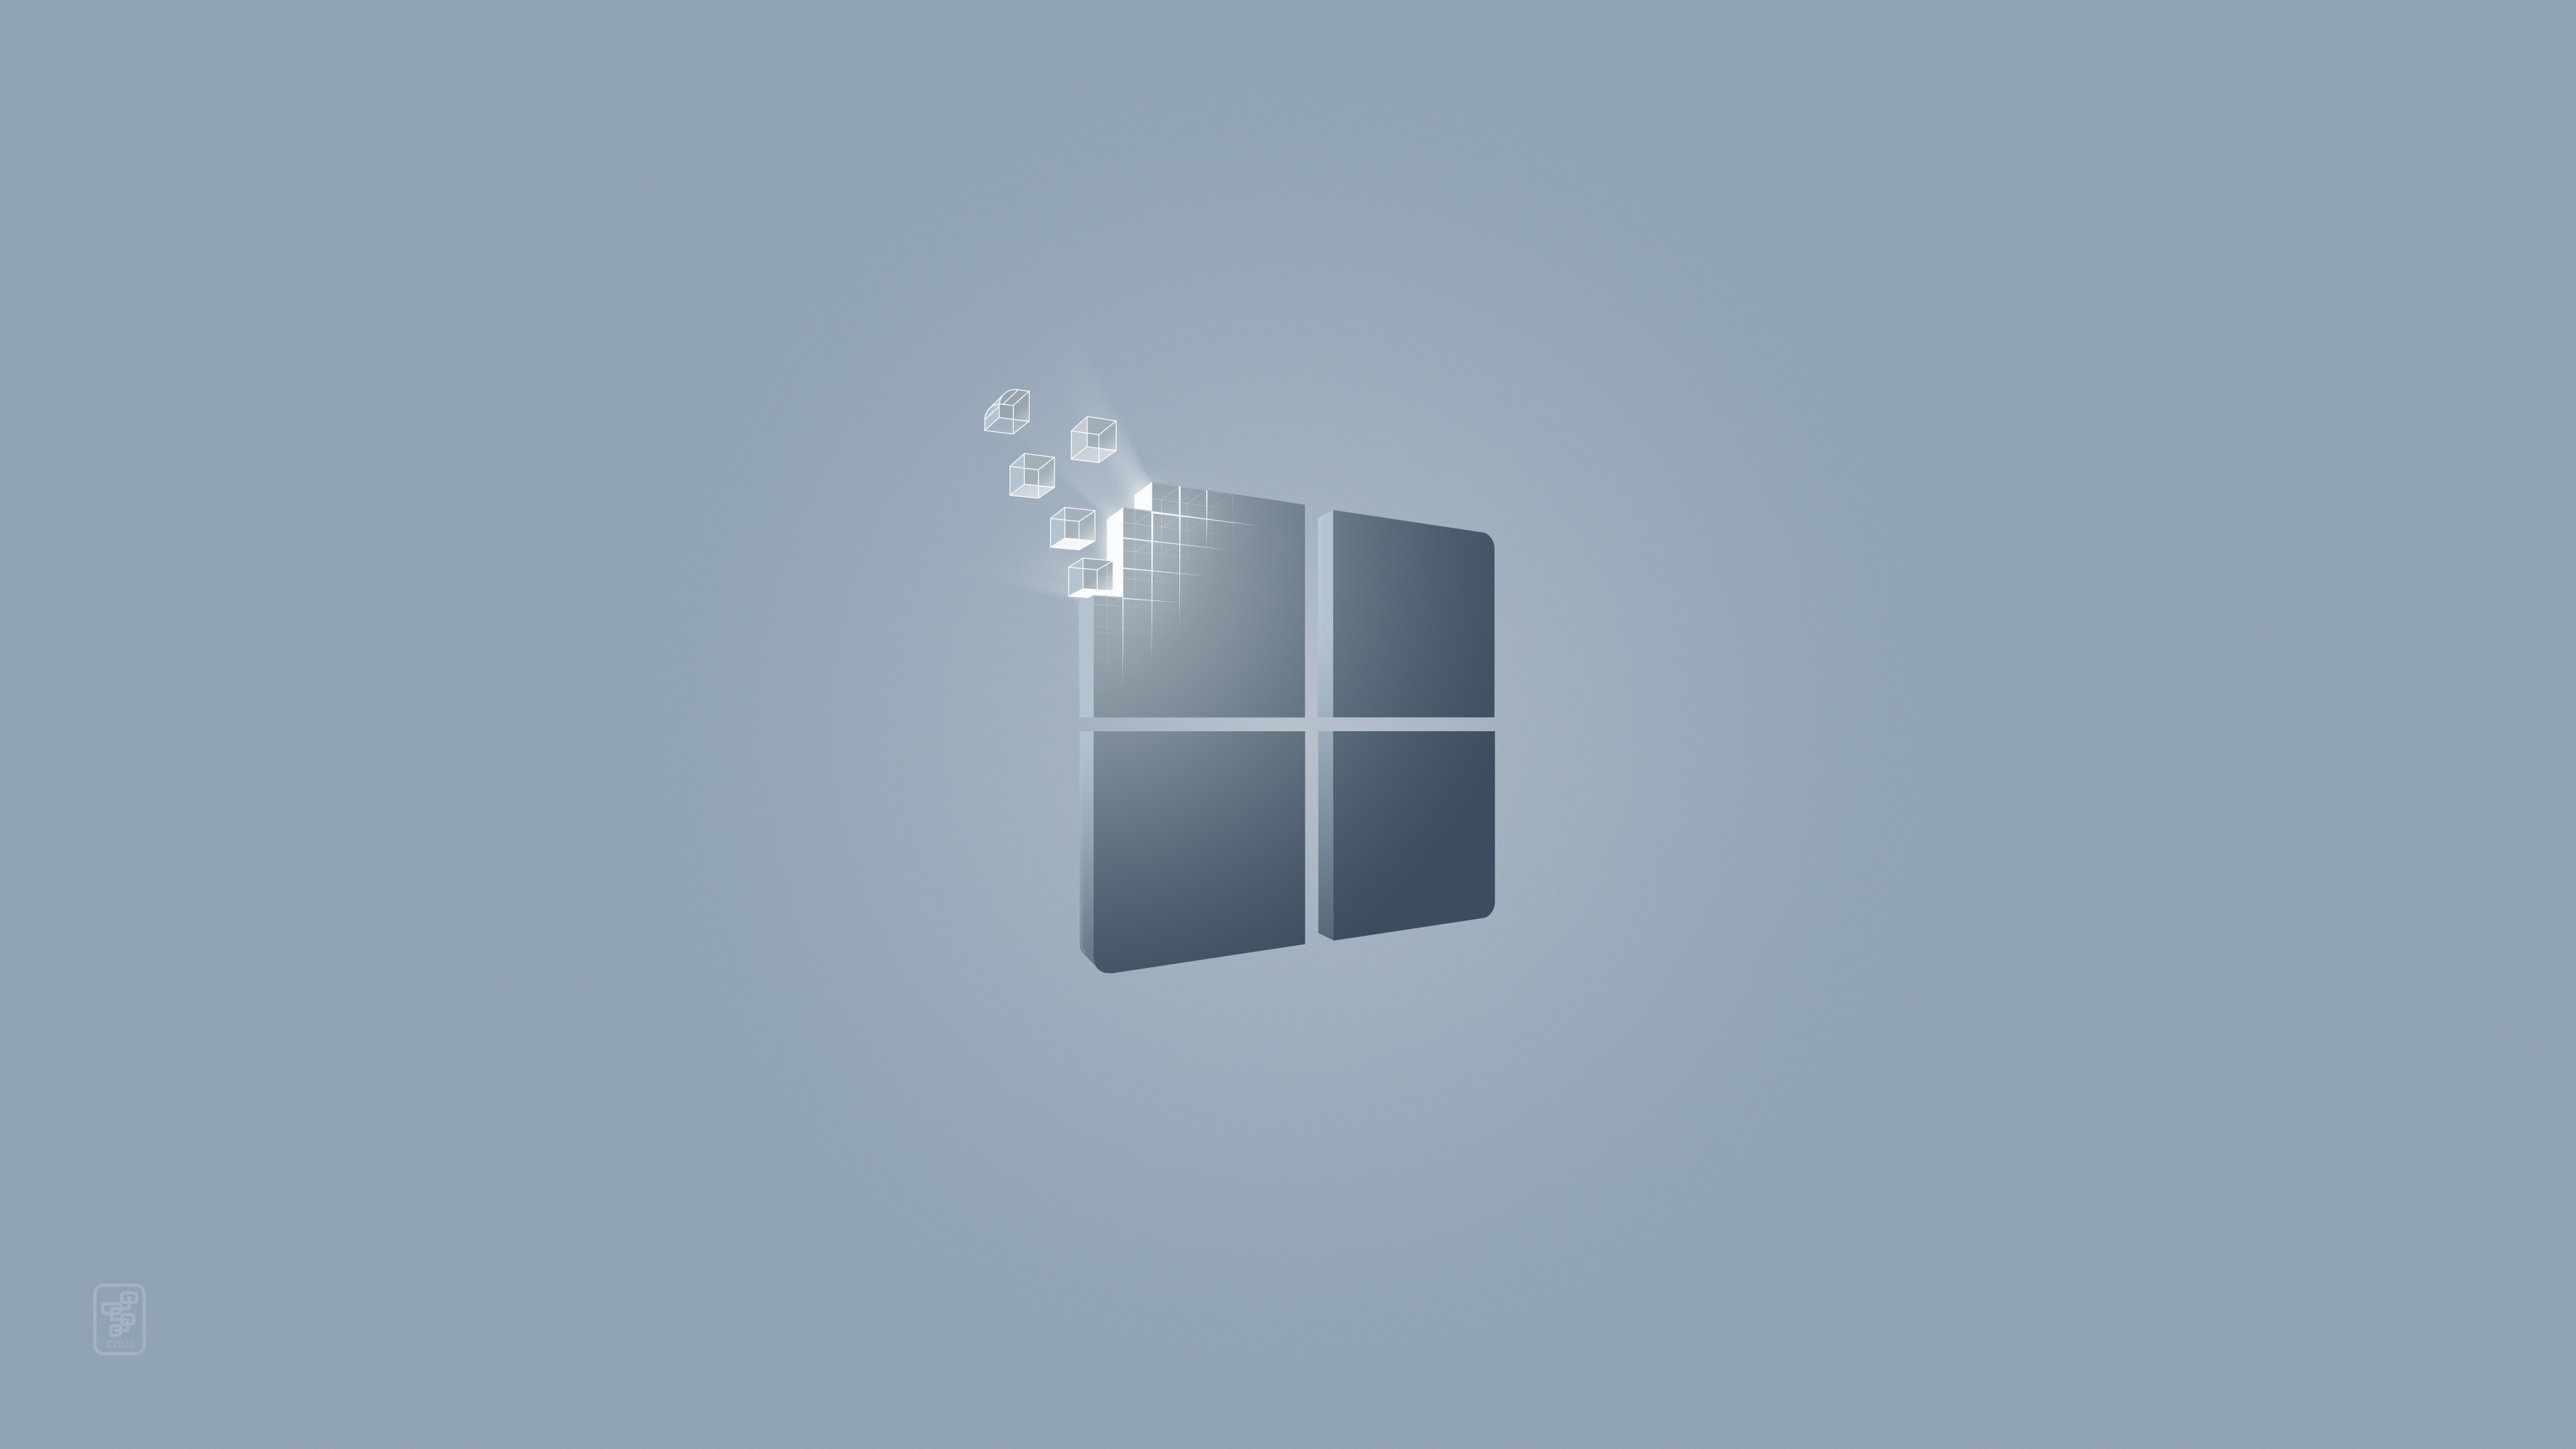 Исходное состояние windows 11. Обои Windows 11. Обои виндовс 11 на рабочий стол. Светлые обои Windows 11. Заставка на рабочий стол Windows 11.